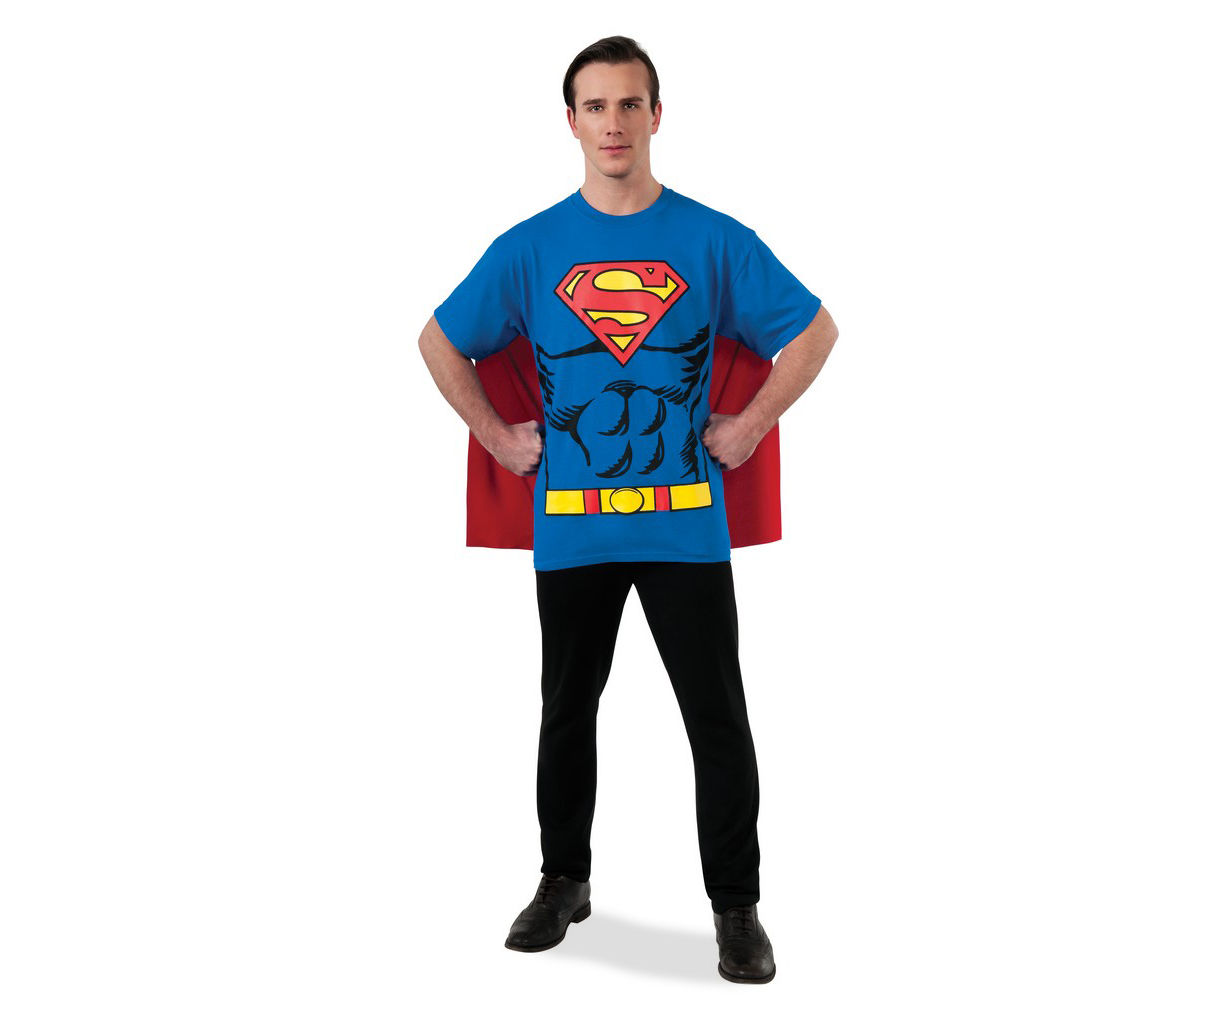 Adult Size X-Large Superman T-Shirt Costume Kit